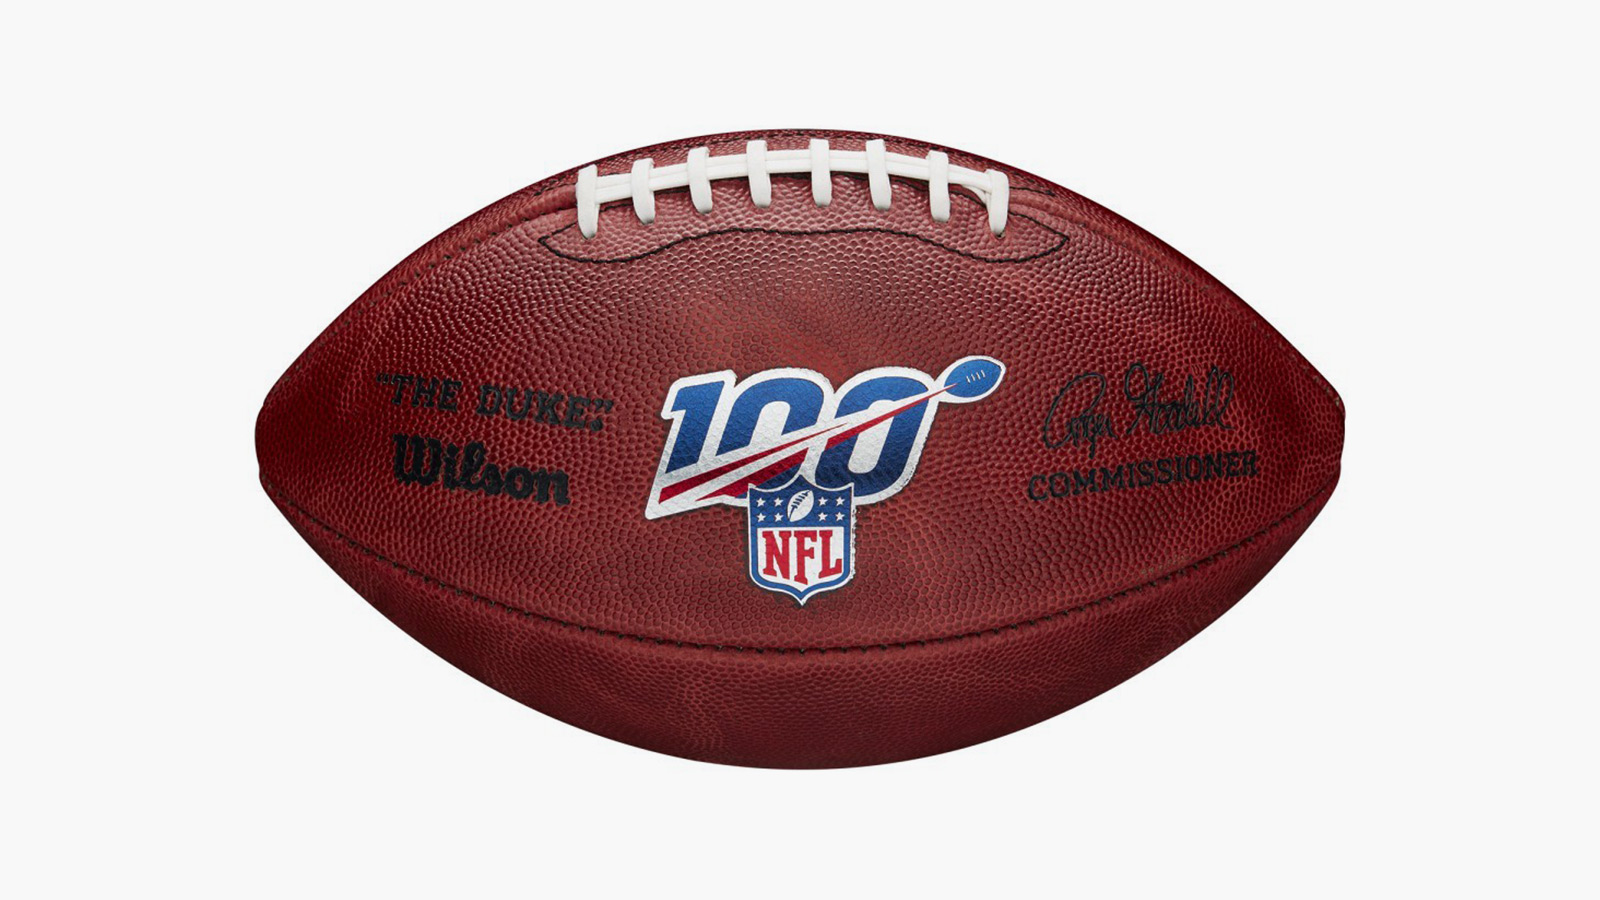 Wilson NFL 100 Duke Football